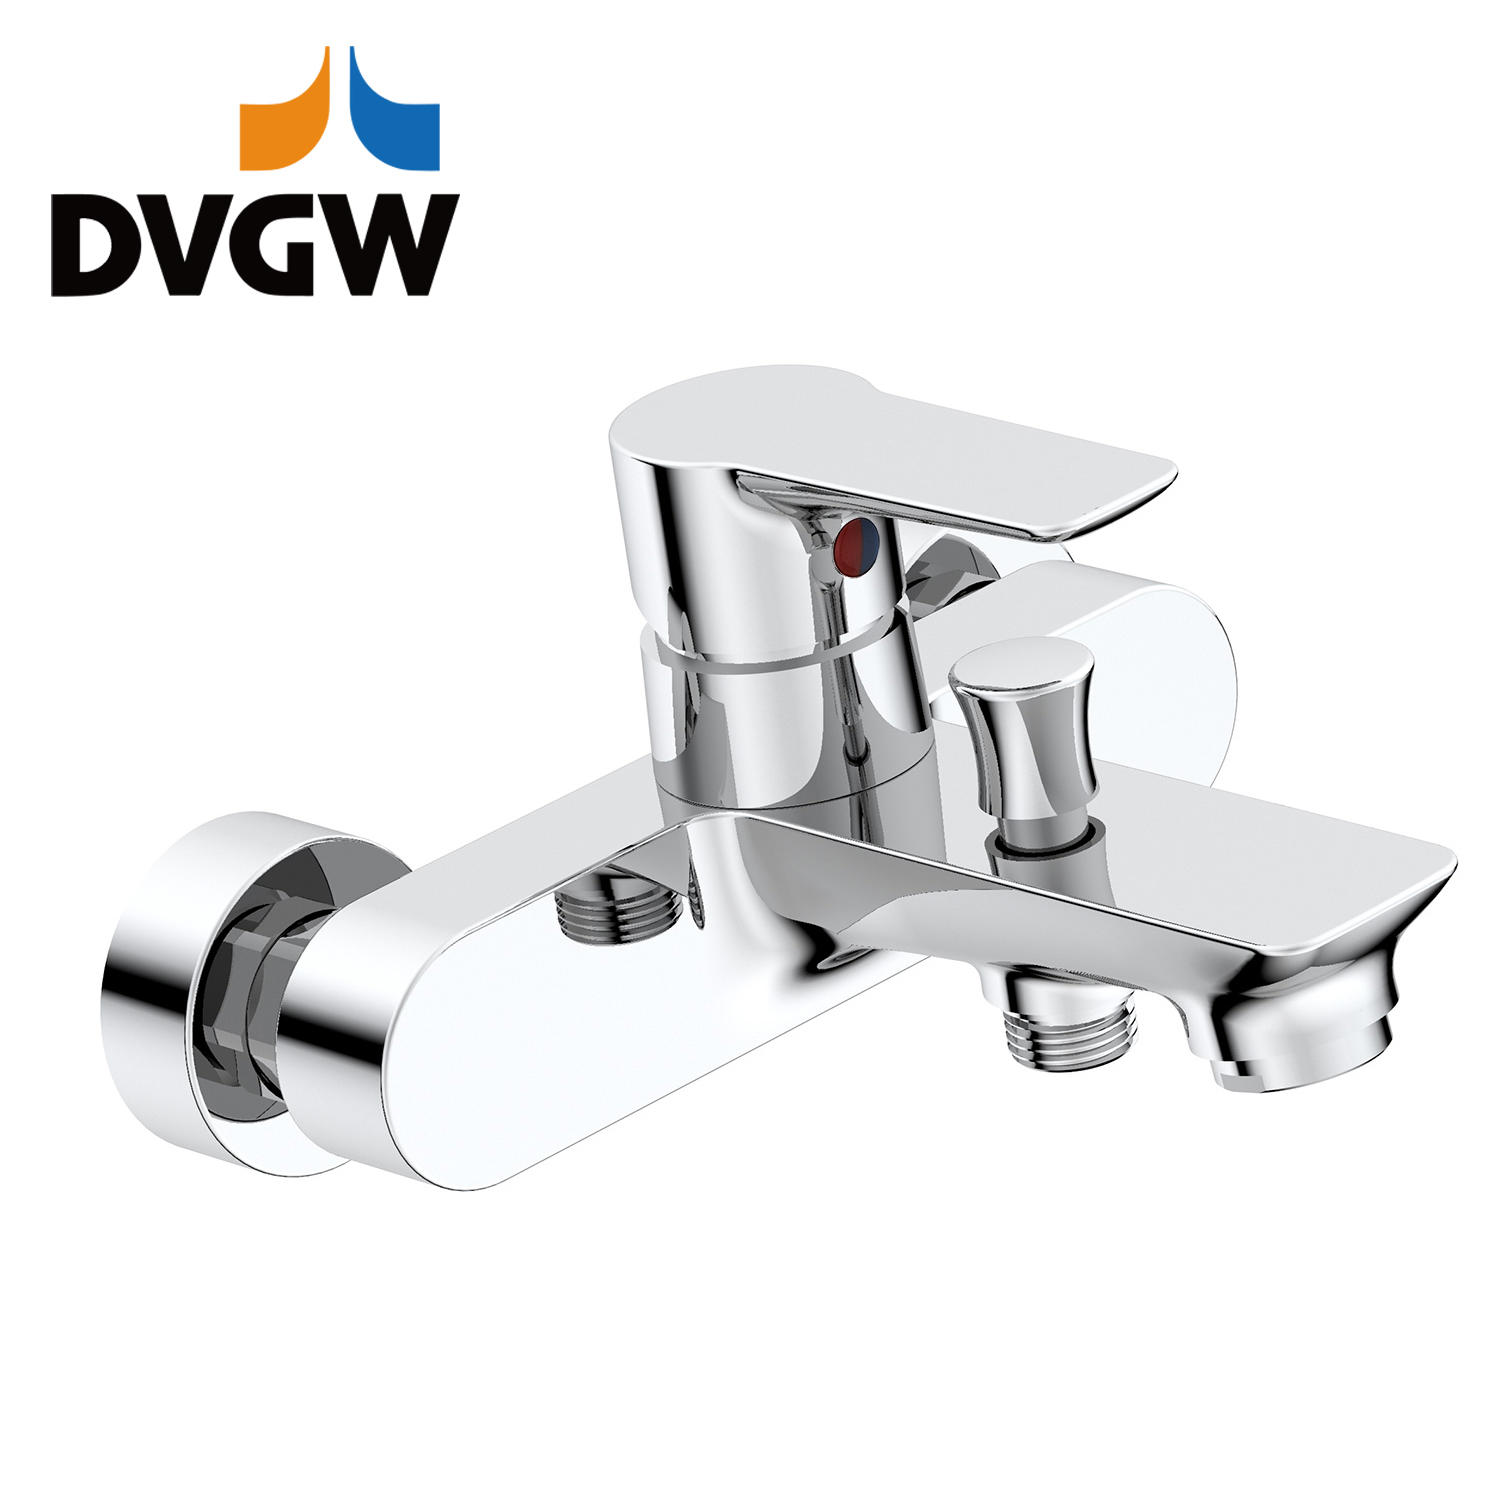 3187-10 DVGW-certifierad, mässingskran med en spak, varm/kallt vatten, väggmonterad badkarblandare